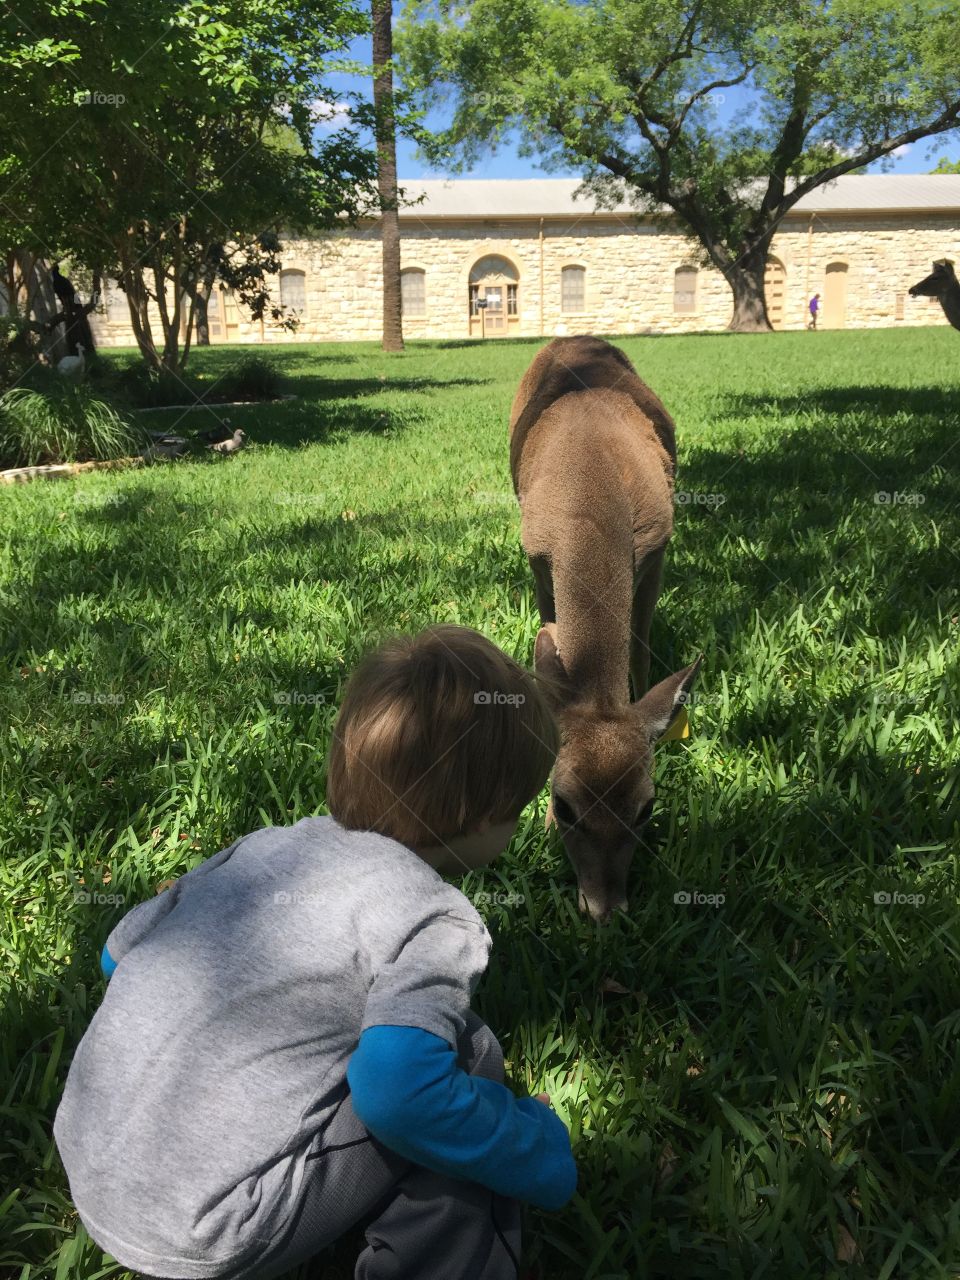 Feeding deer. feeding deer in the park 